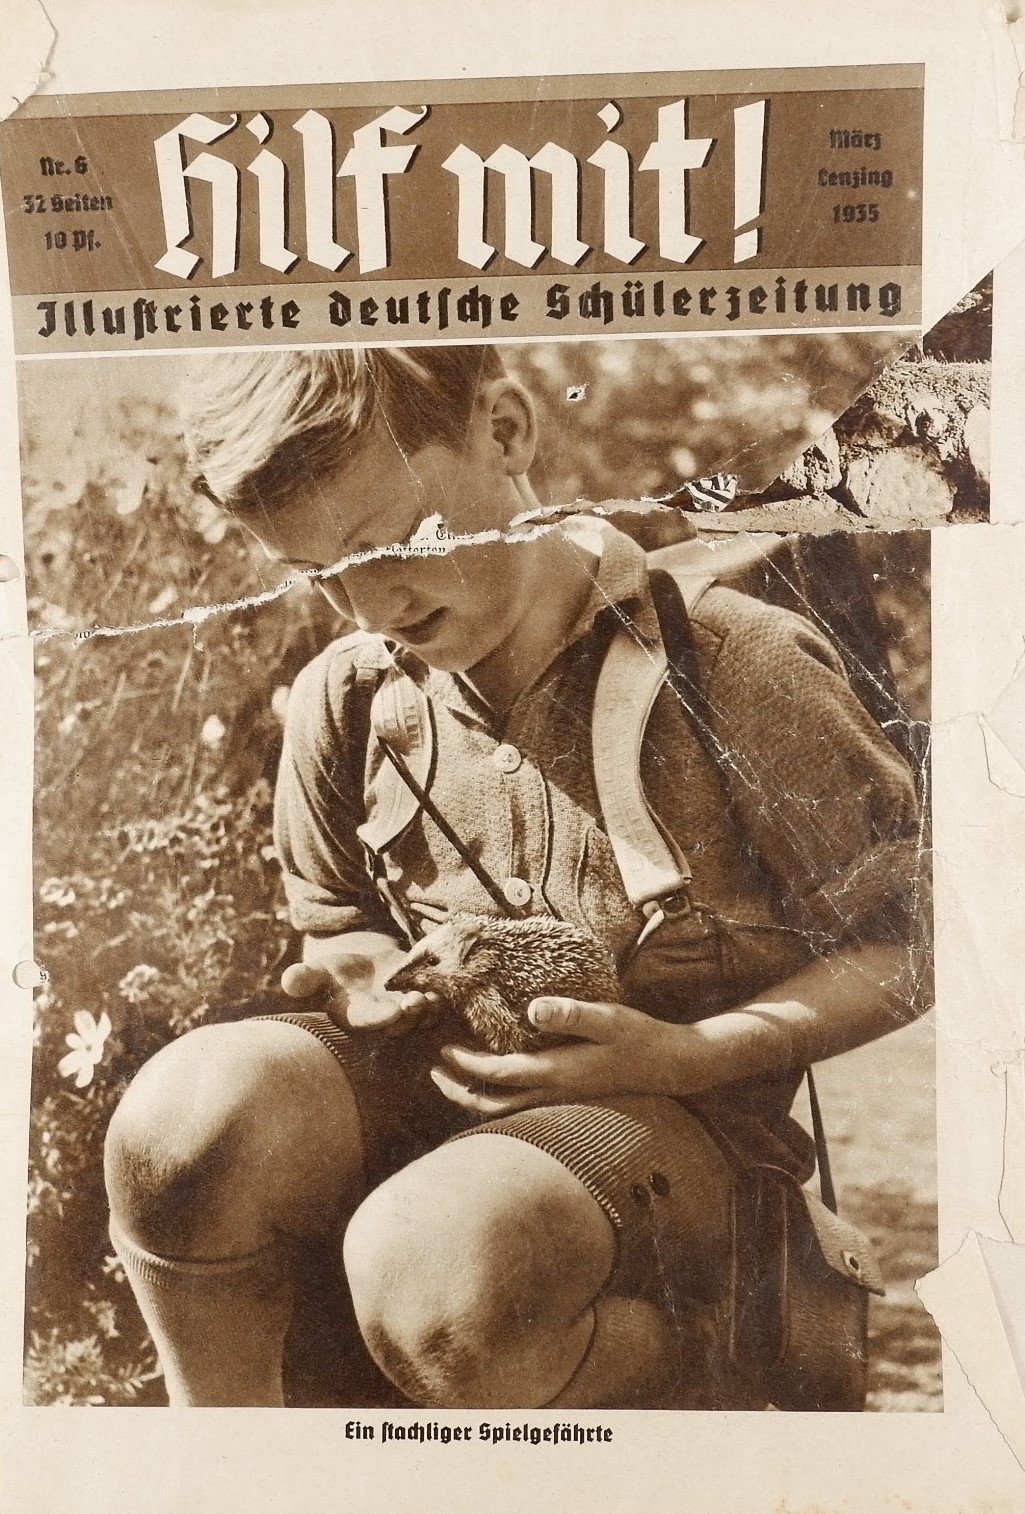 Hilf mit! - Illustrierte deutsche Schülerzeitung 6/1935 (Volkskunde- und Freilichtmuseum Roscheider Hof RR-F)